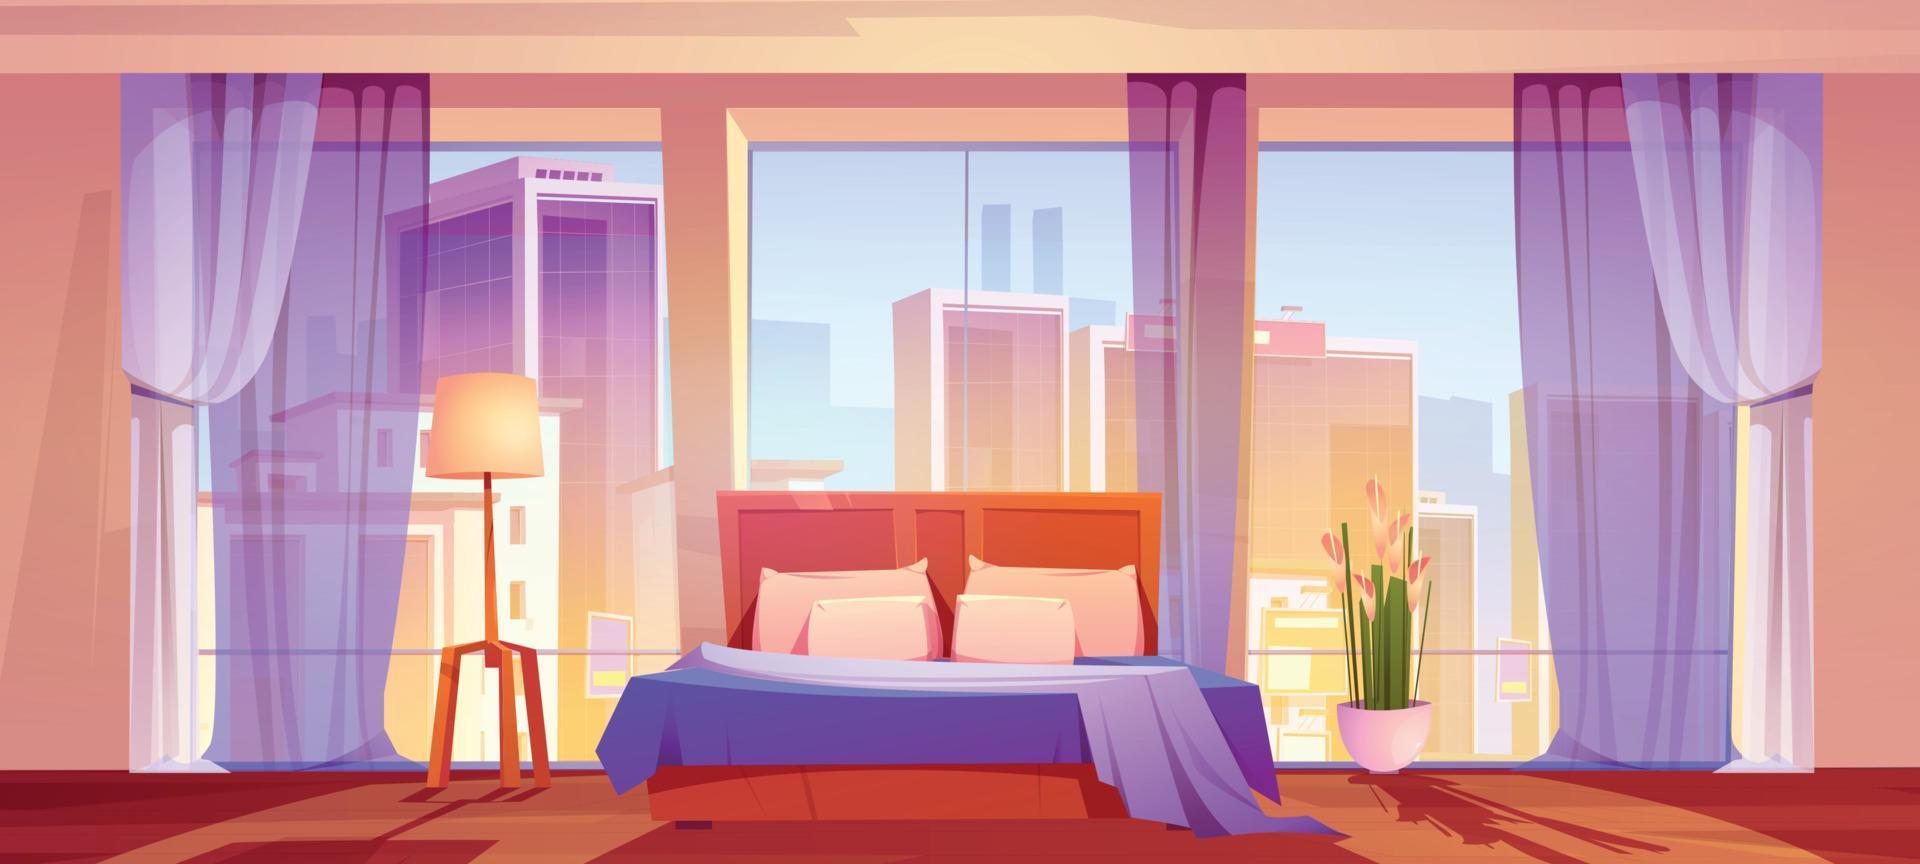 Camera da letto con città Visualizza, casa o Hotel interno vettore